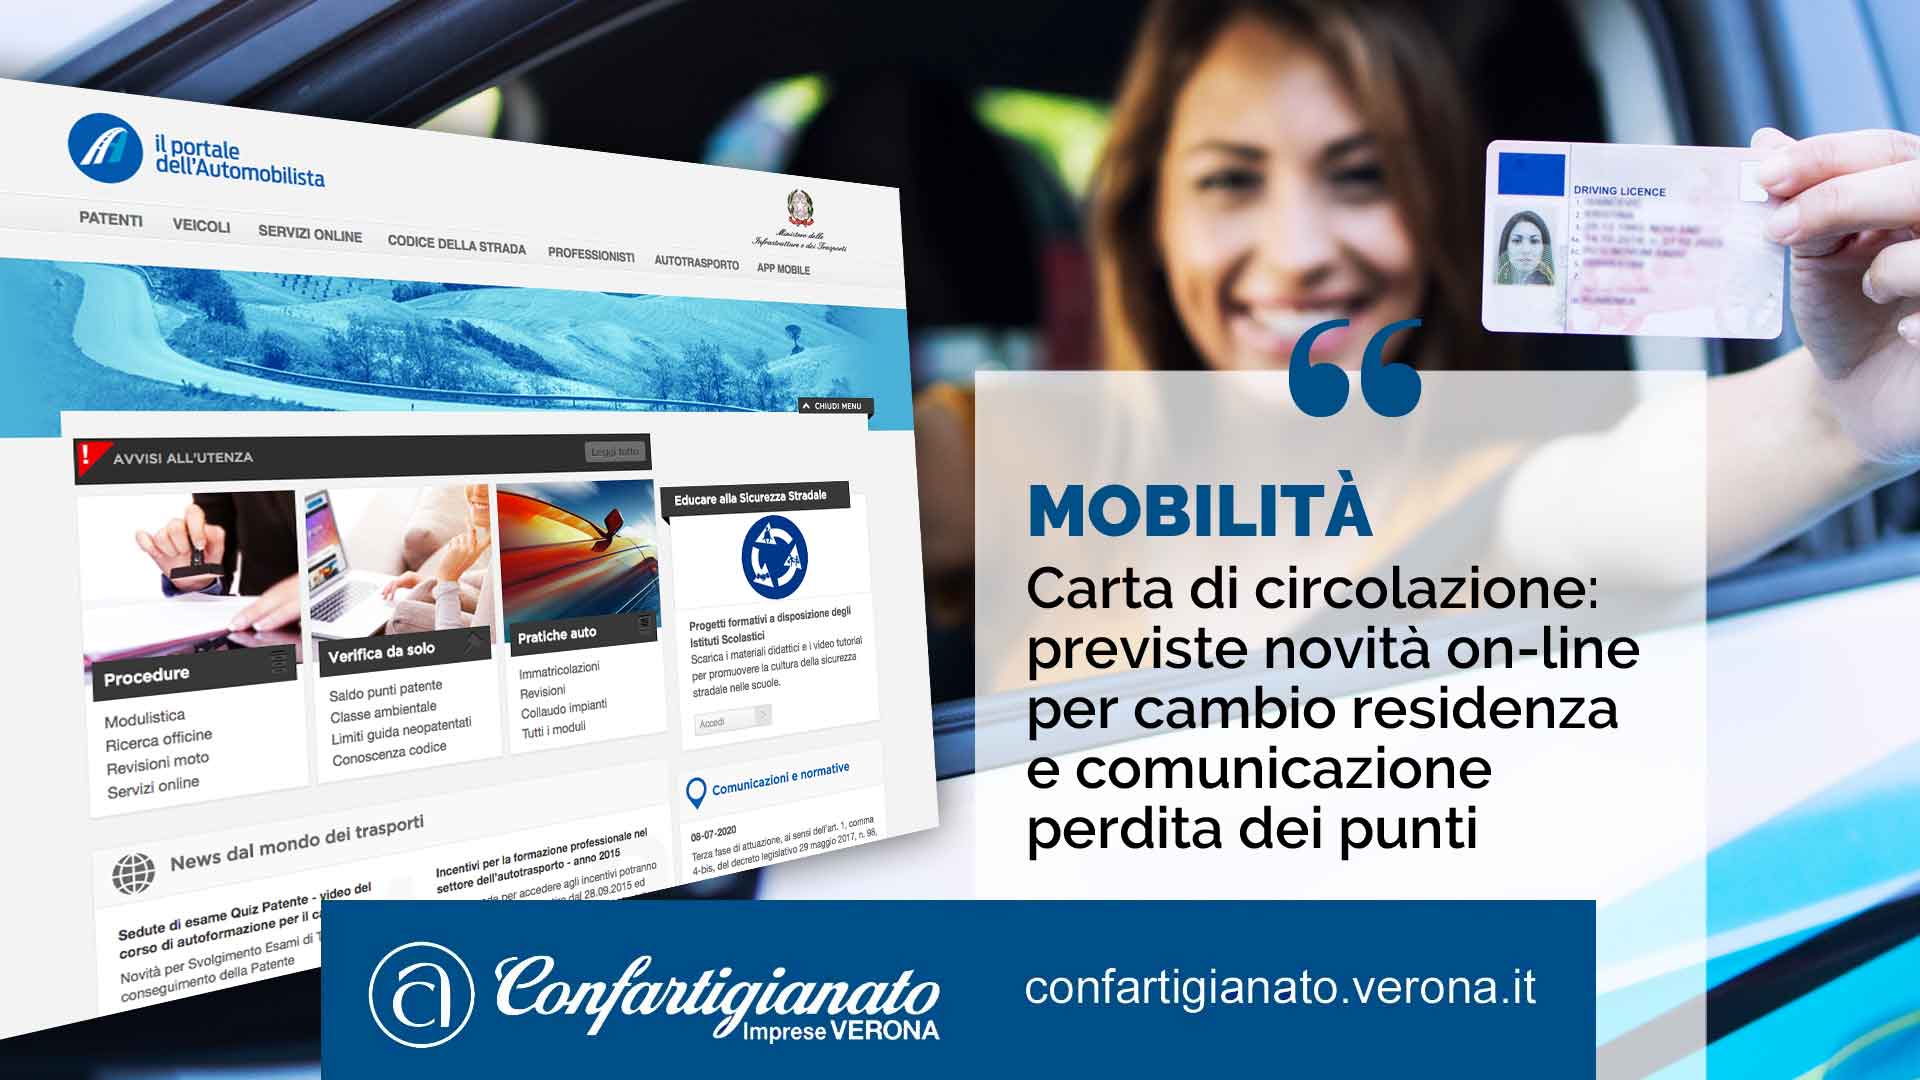 MOBILITA' – Carta di circolazione, previste novità on-line per tagliando cambio residenza e comunicazione perdita dei punti